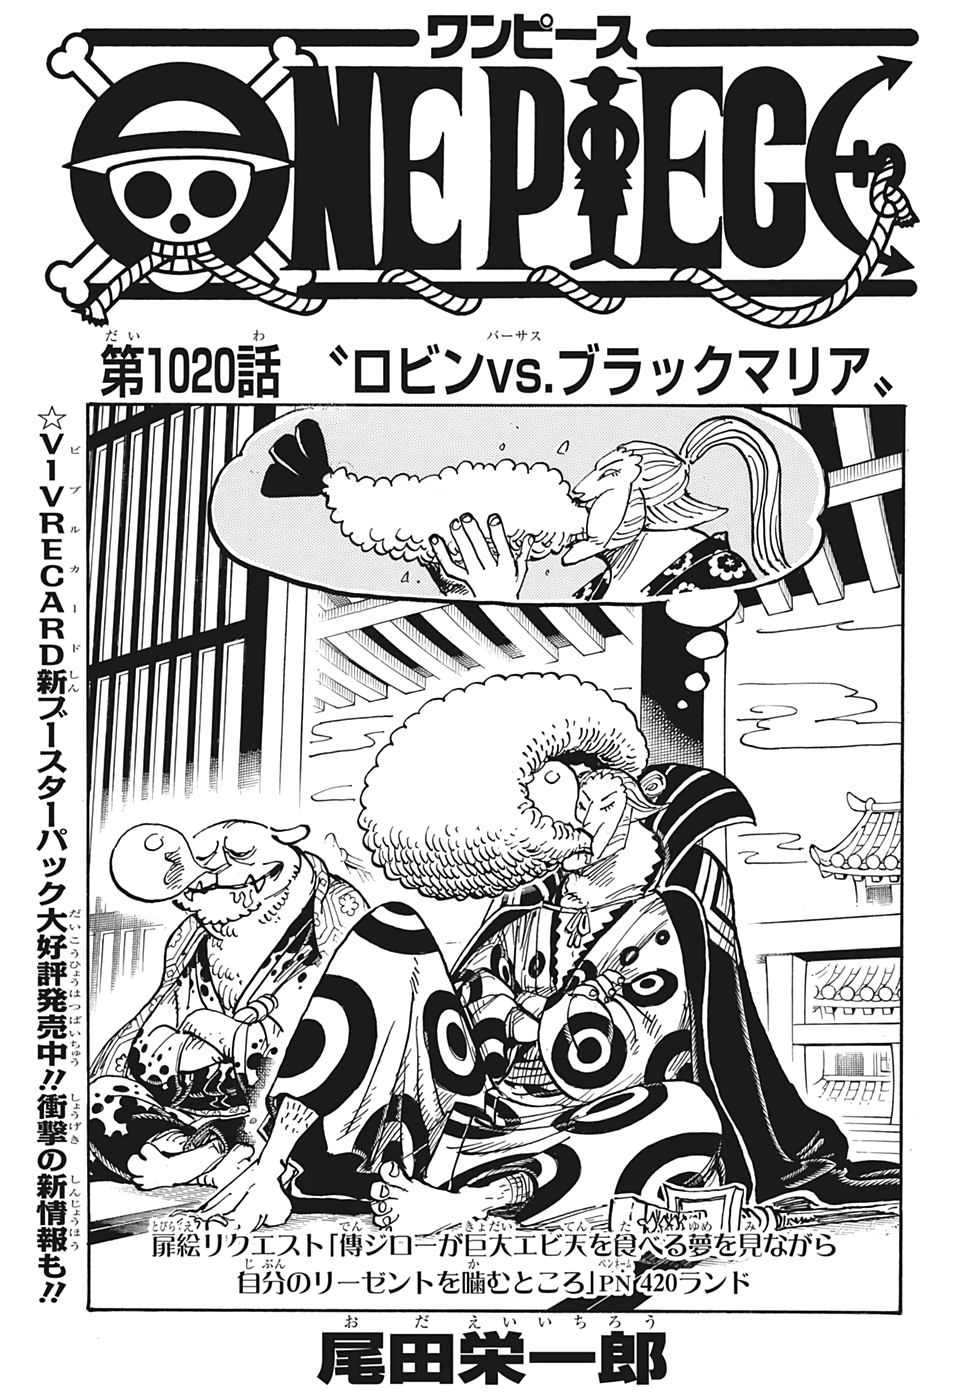 Capitulo 10 One Piece Wiki Fandom